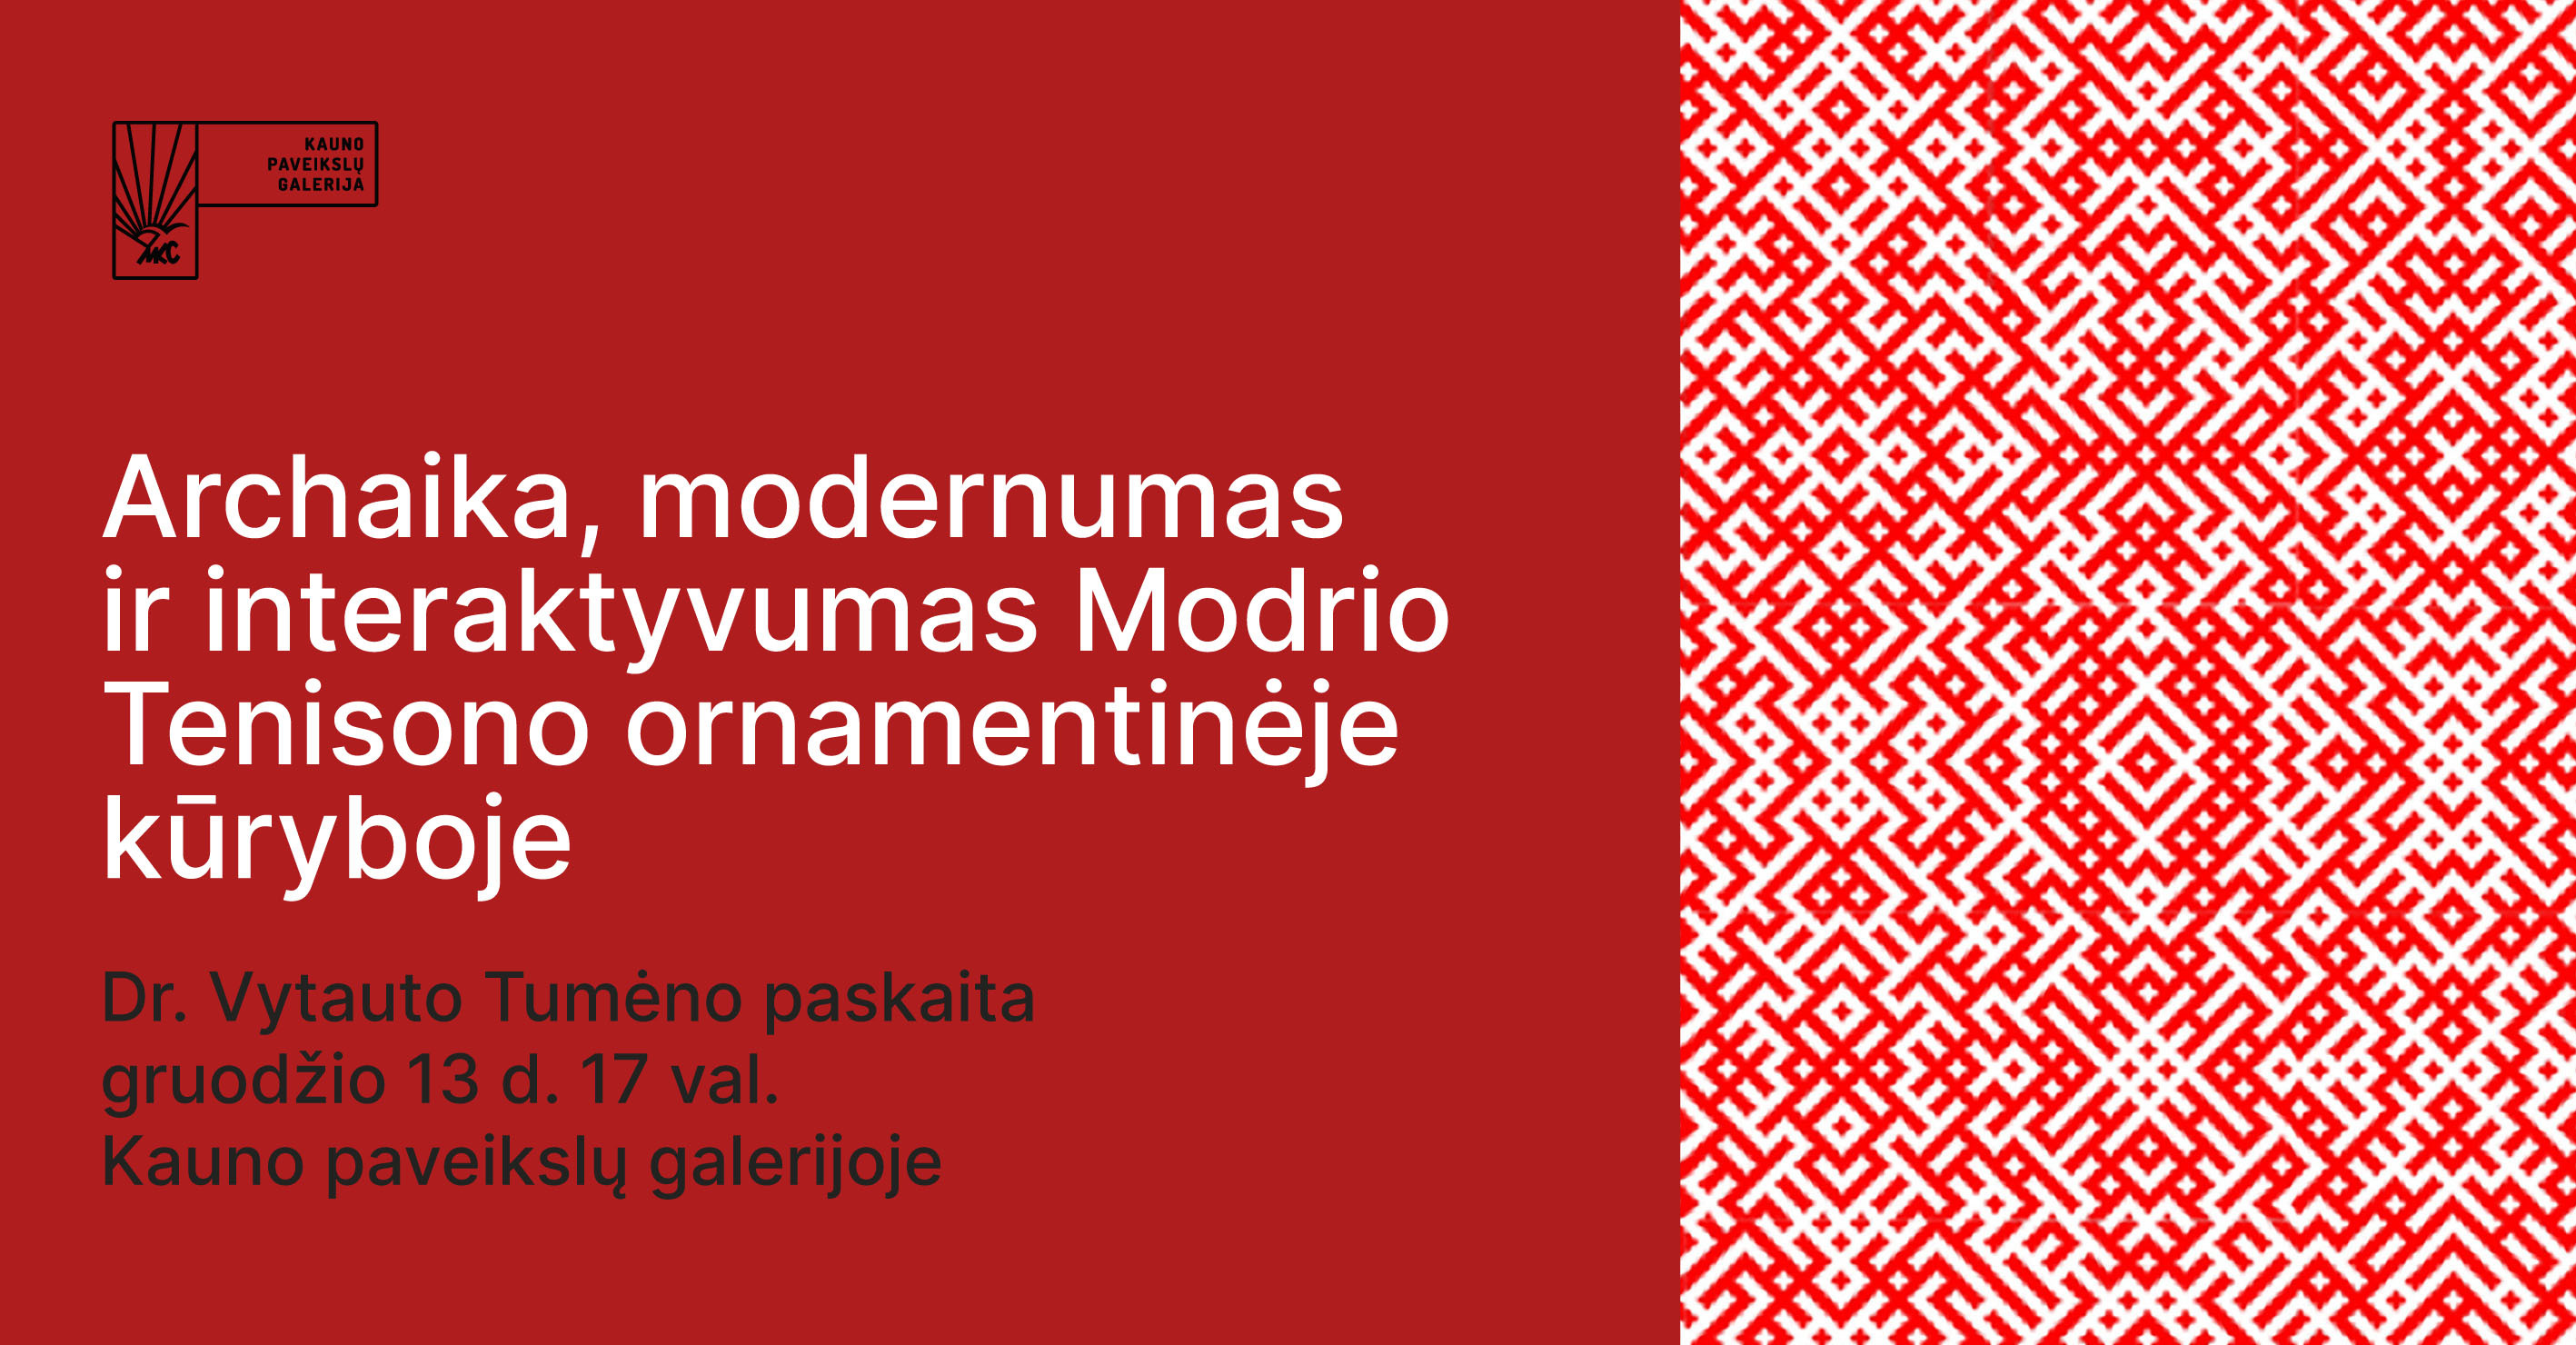 Paskaita „Archaika, modernumas ir interaktyvumas Modrio Tenisono ornamentinėje kūryboje“.